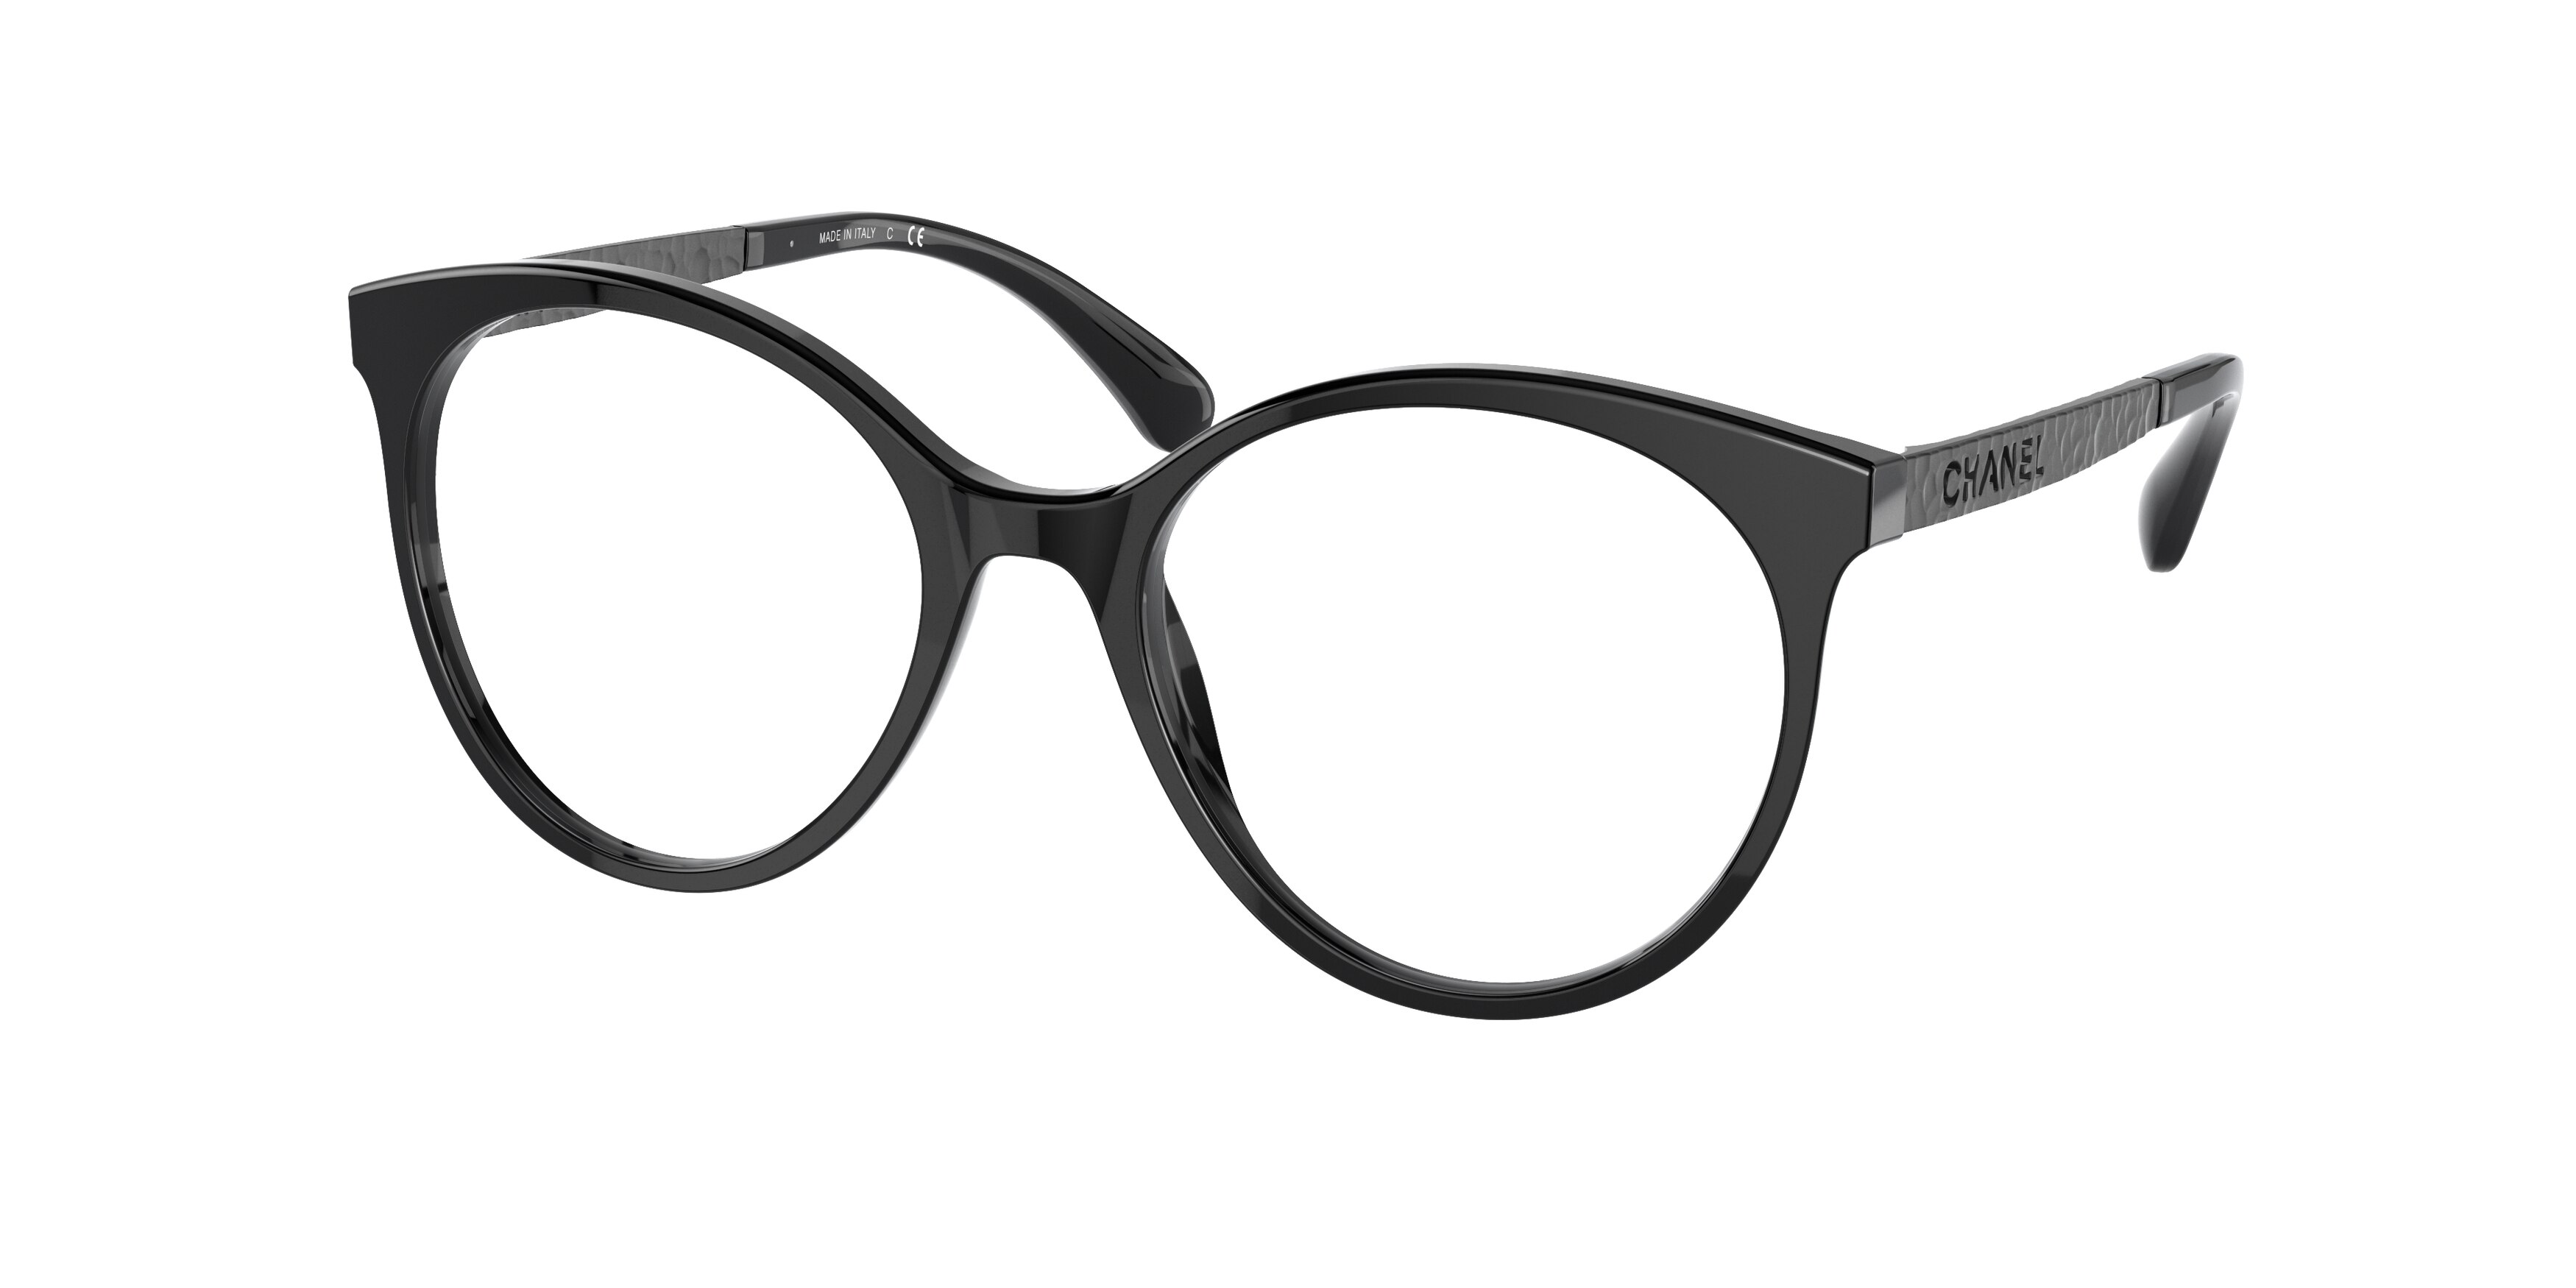 CHANEL 3305-B 714 54mm Eyewear FRAMES Eyeglasses RX Optical